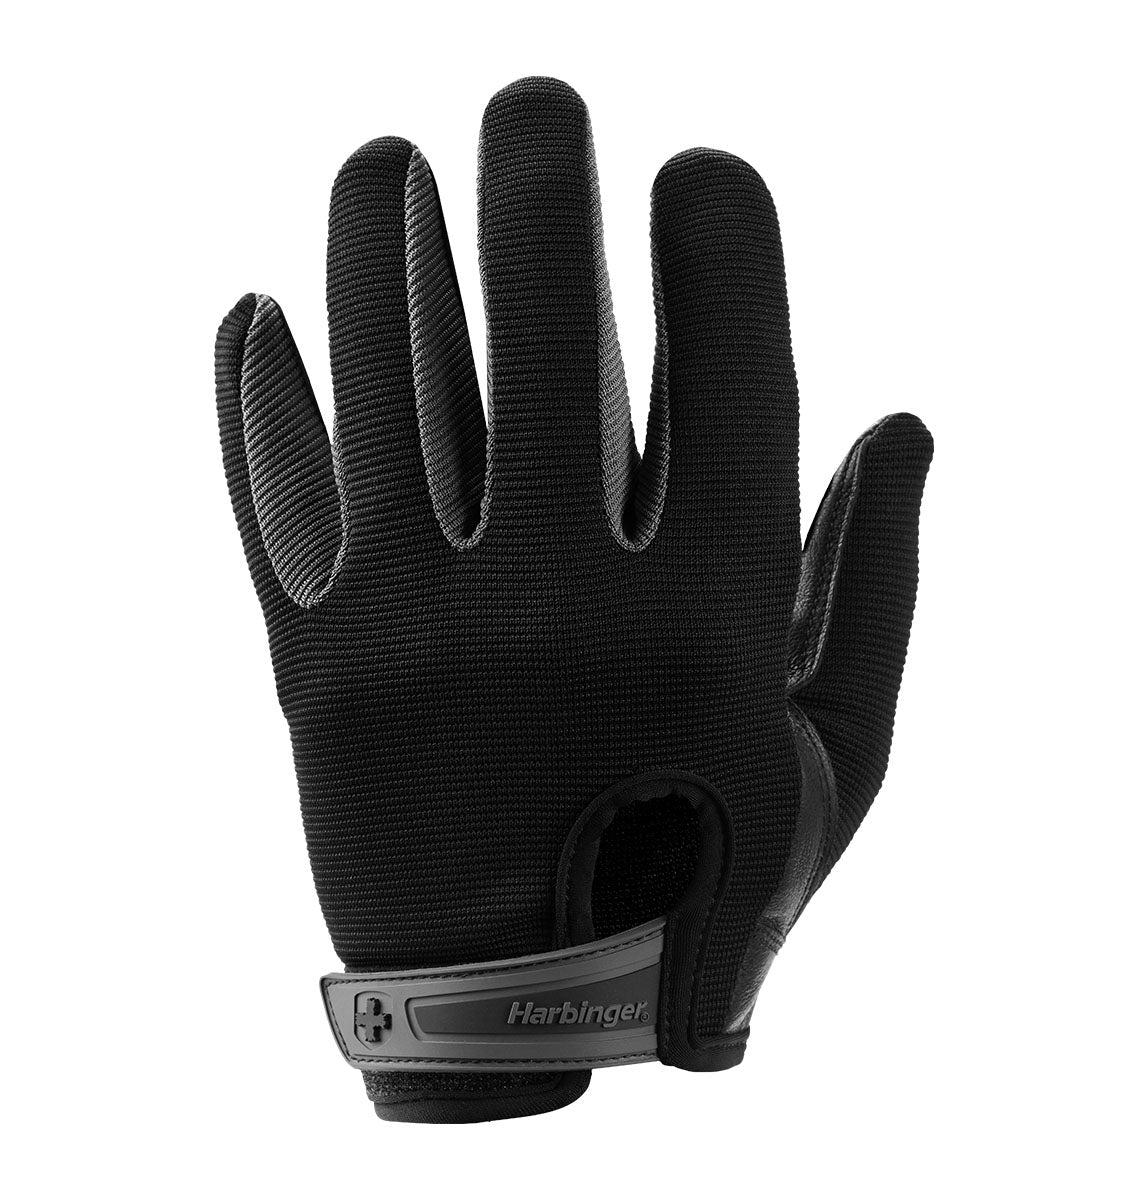 Harbinger Power Protect Gloves - Men's - Black - 1